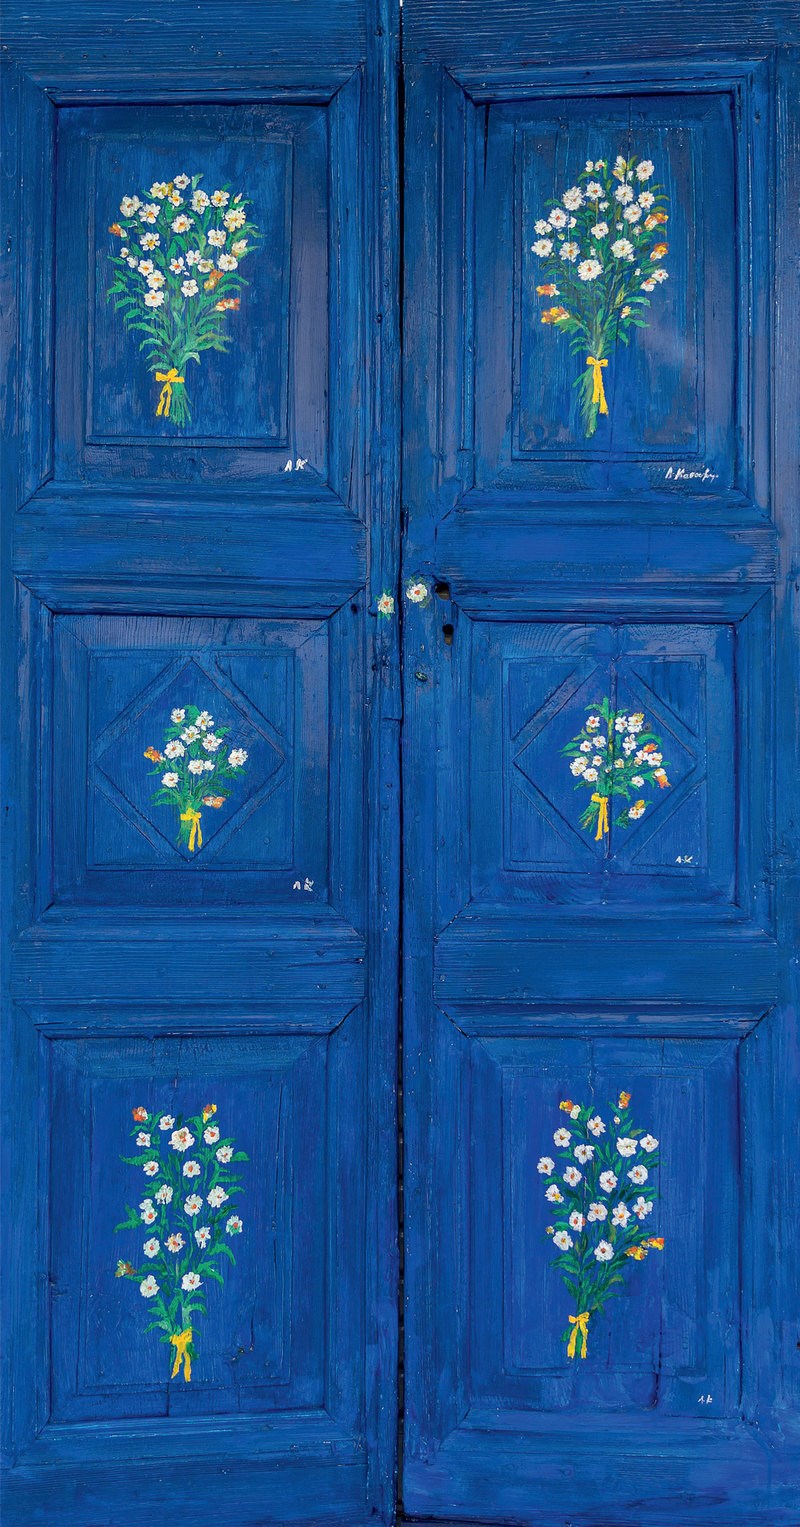 Άνοιξε την πόρτα ξανά: Η νέα έκθεση ζωγραφικής της Λίτσας Κασούμη